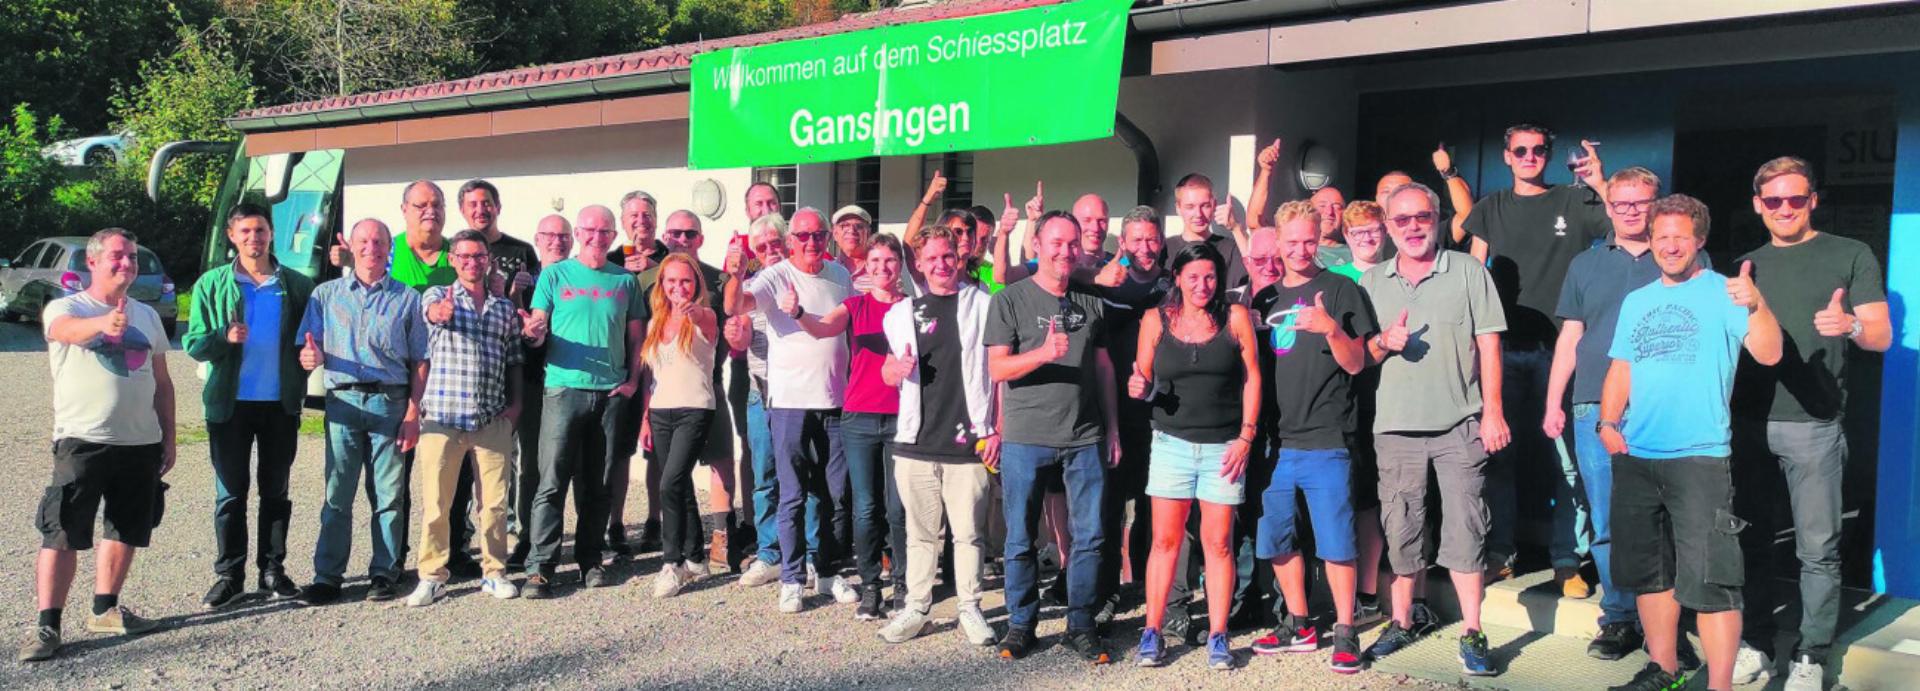 Die Mitarbeiter der SIUS AG aus Effretikon genossen den Ausflug nach Gansingen. Foto: zVg